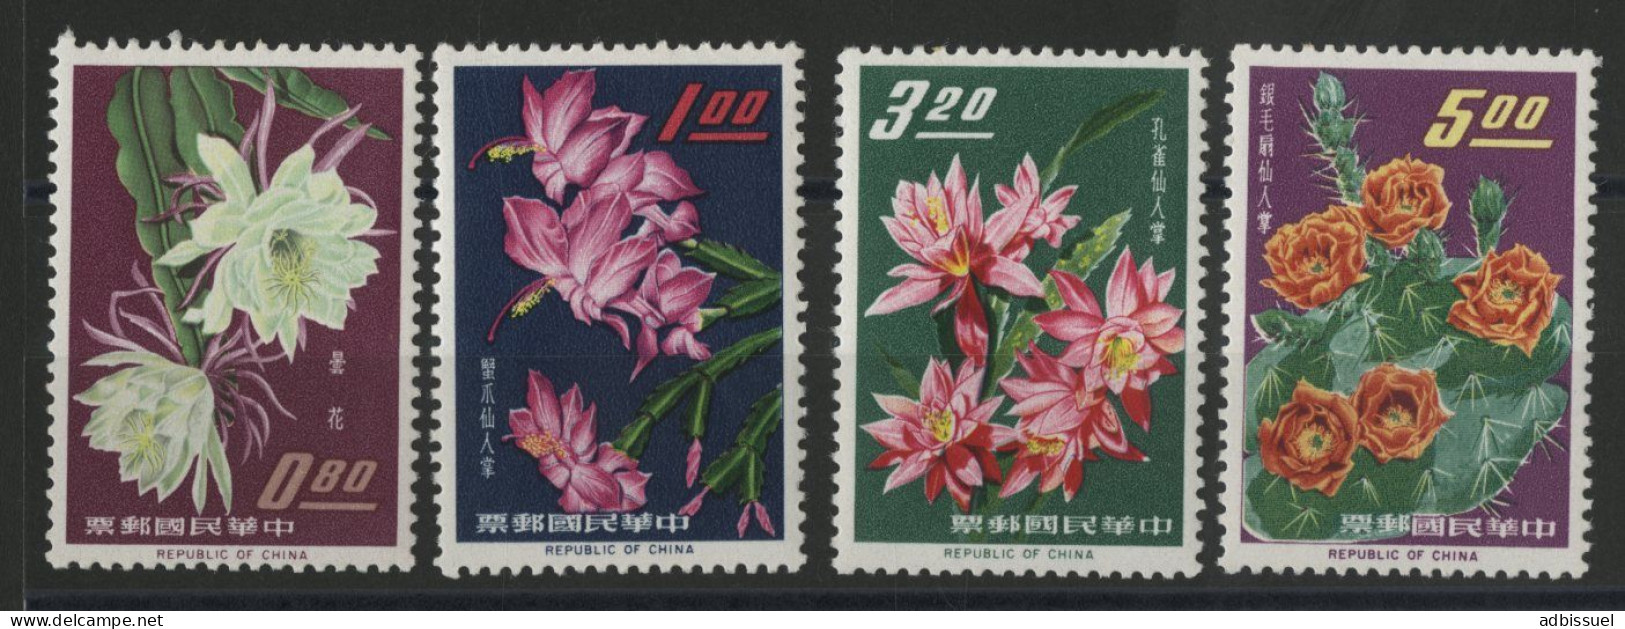 TAIWAN REPUBLIC OF CHINA Bloc N° 455 à 458 Neuf ** (MNH) FLEURS FLOWERS Qualité TB - Nuevos